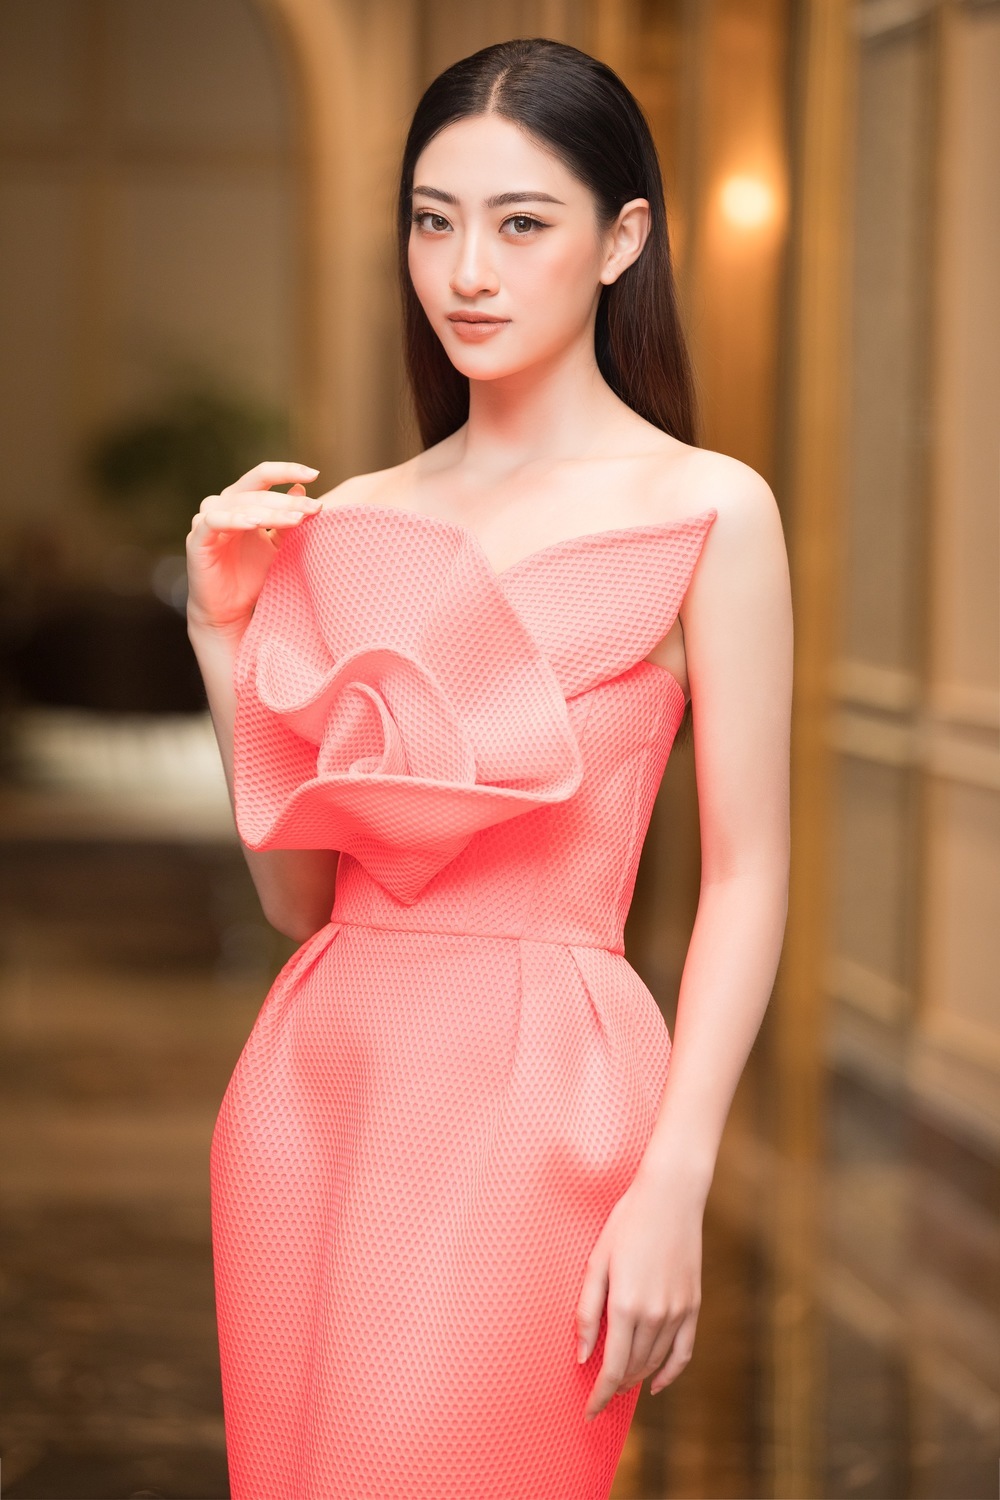  
Lương Thùy Linh chọn đầm cúp ngực chân váy bút chì màu hồng, item hơn 30 triệu đồng của NTK Đỗ Mạnh Cường. (Ảnh: BTC)